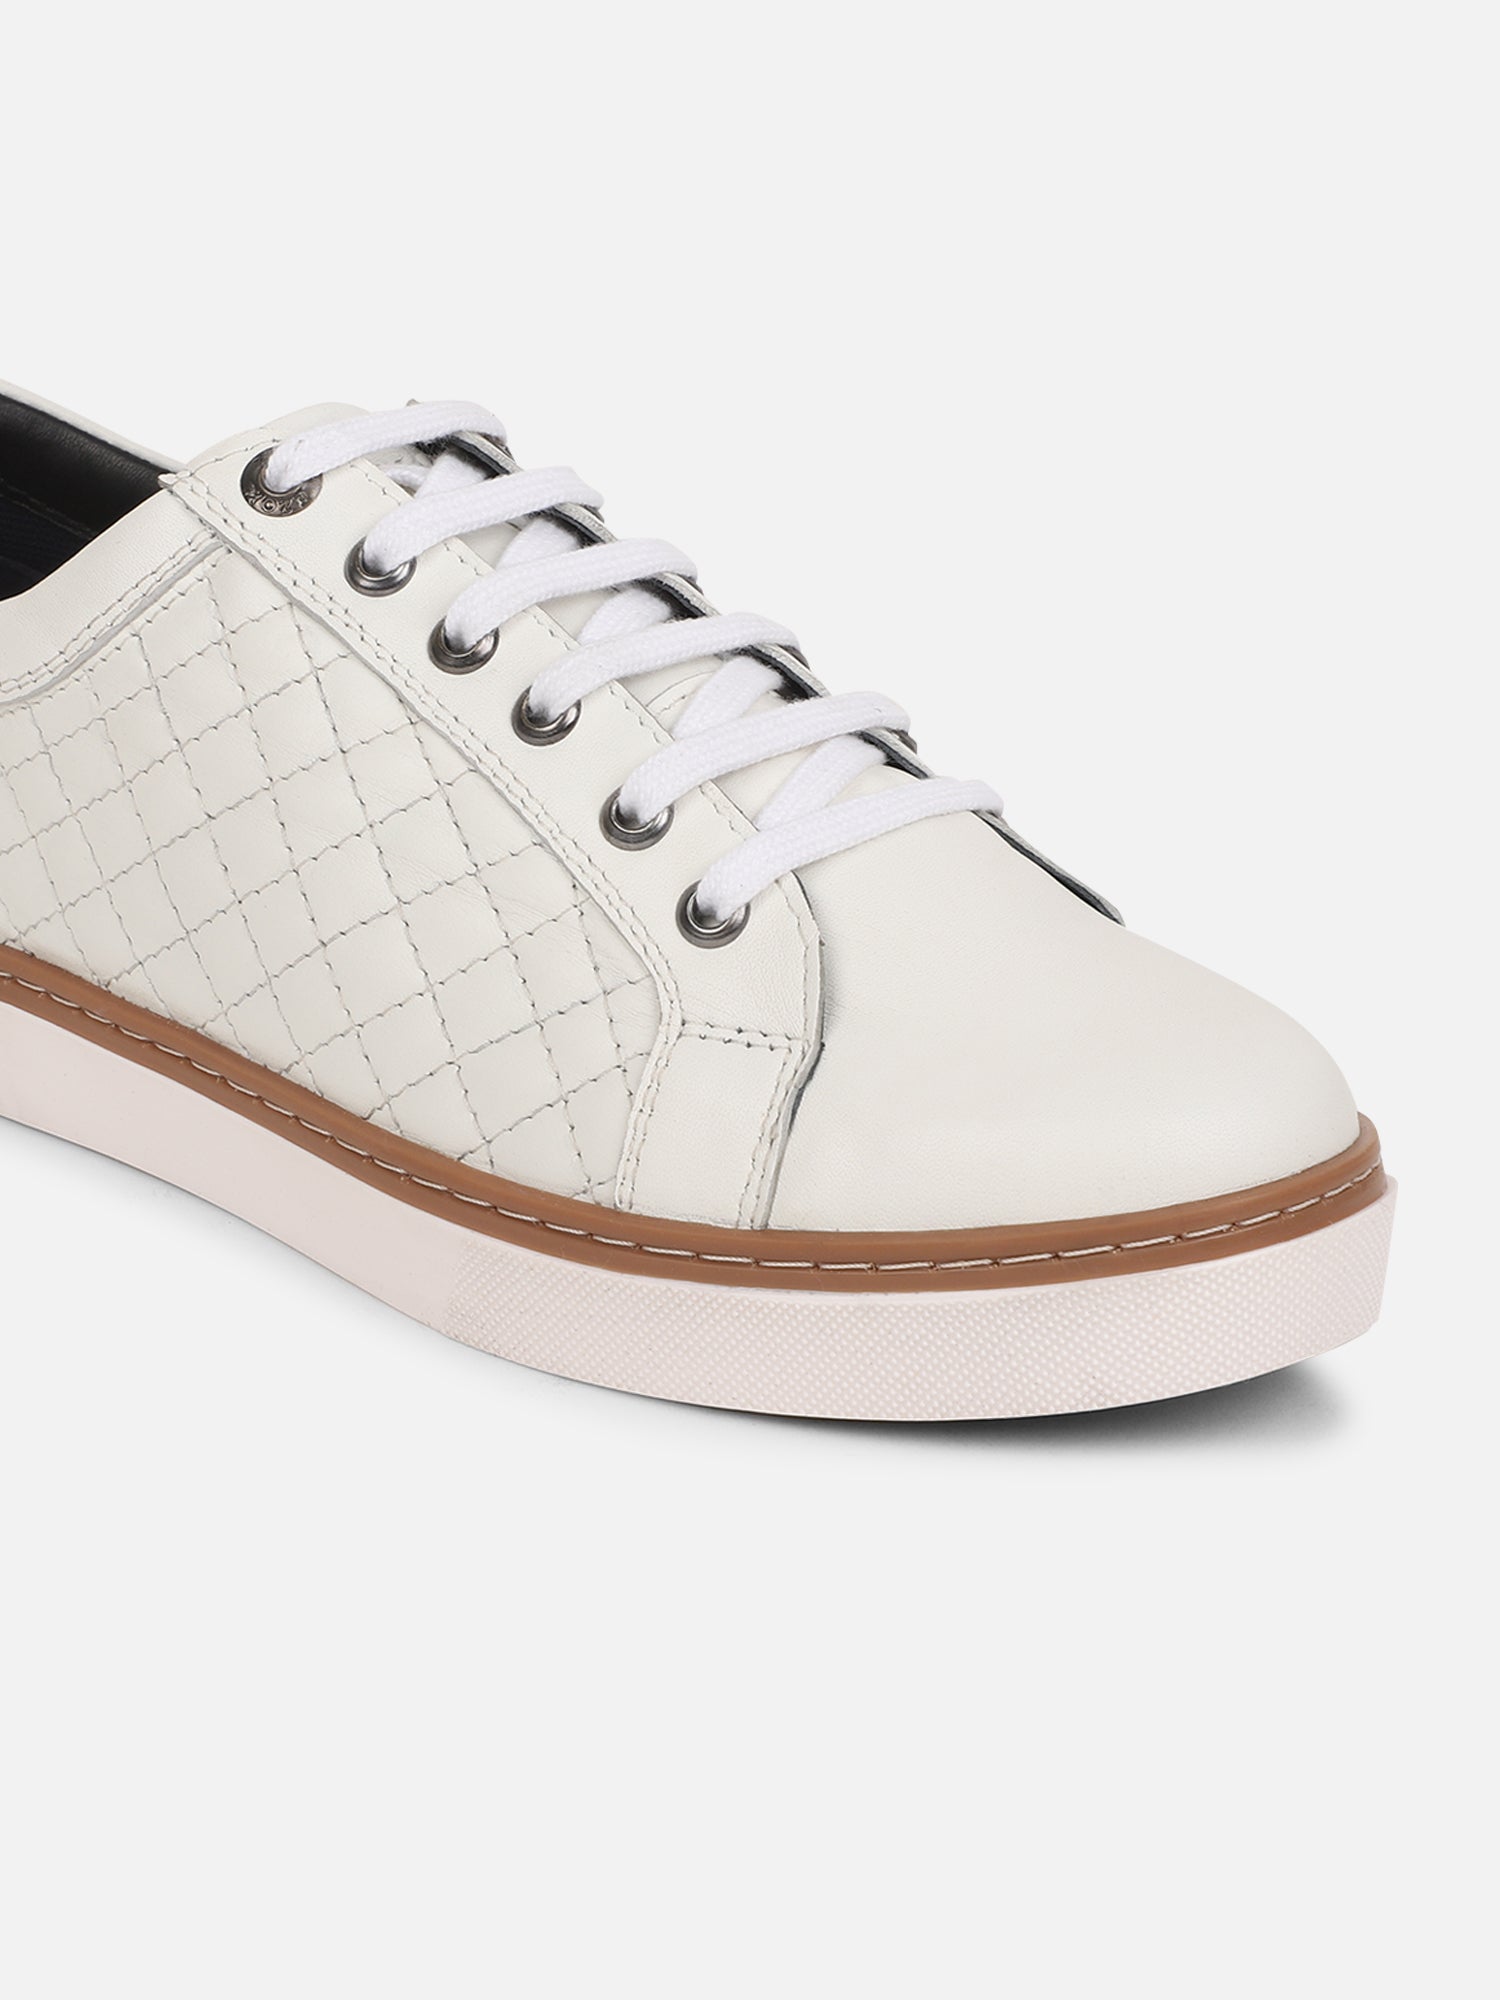 Ezok Men Casual Leather Sneaker ( White )